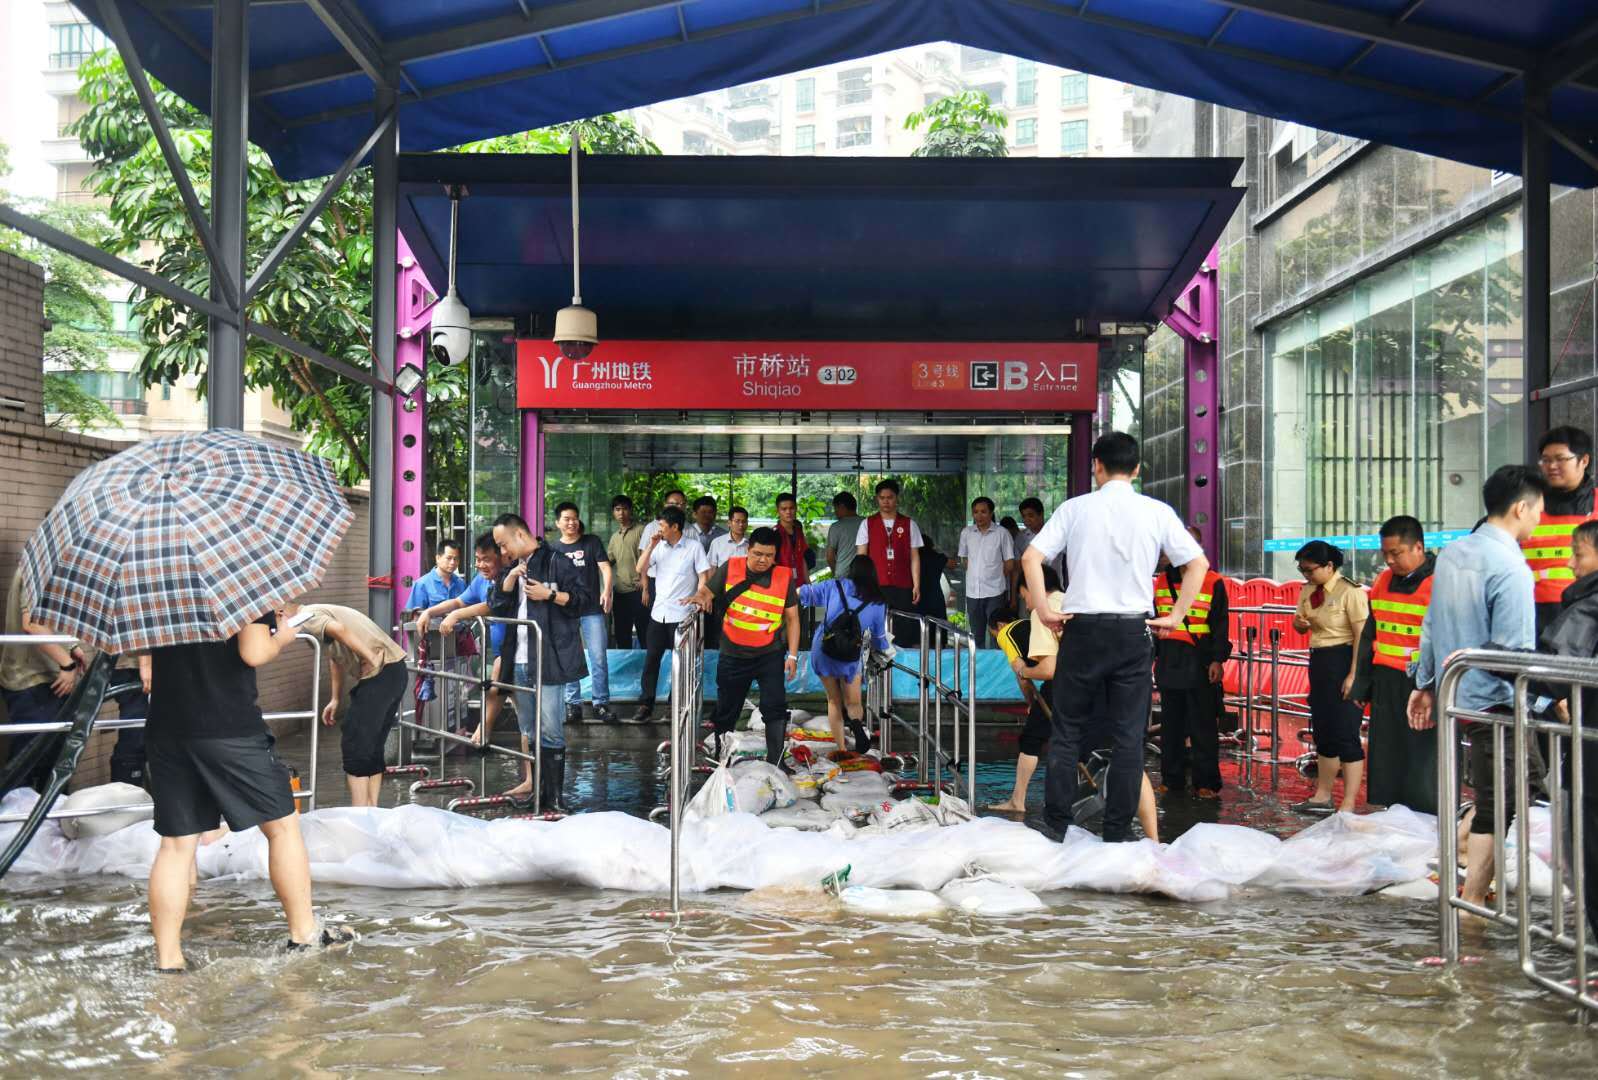 受持续降雨影响,29日上午,广州市番禺区下起了大暴雨,其中沙头街,石楼